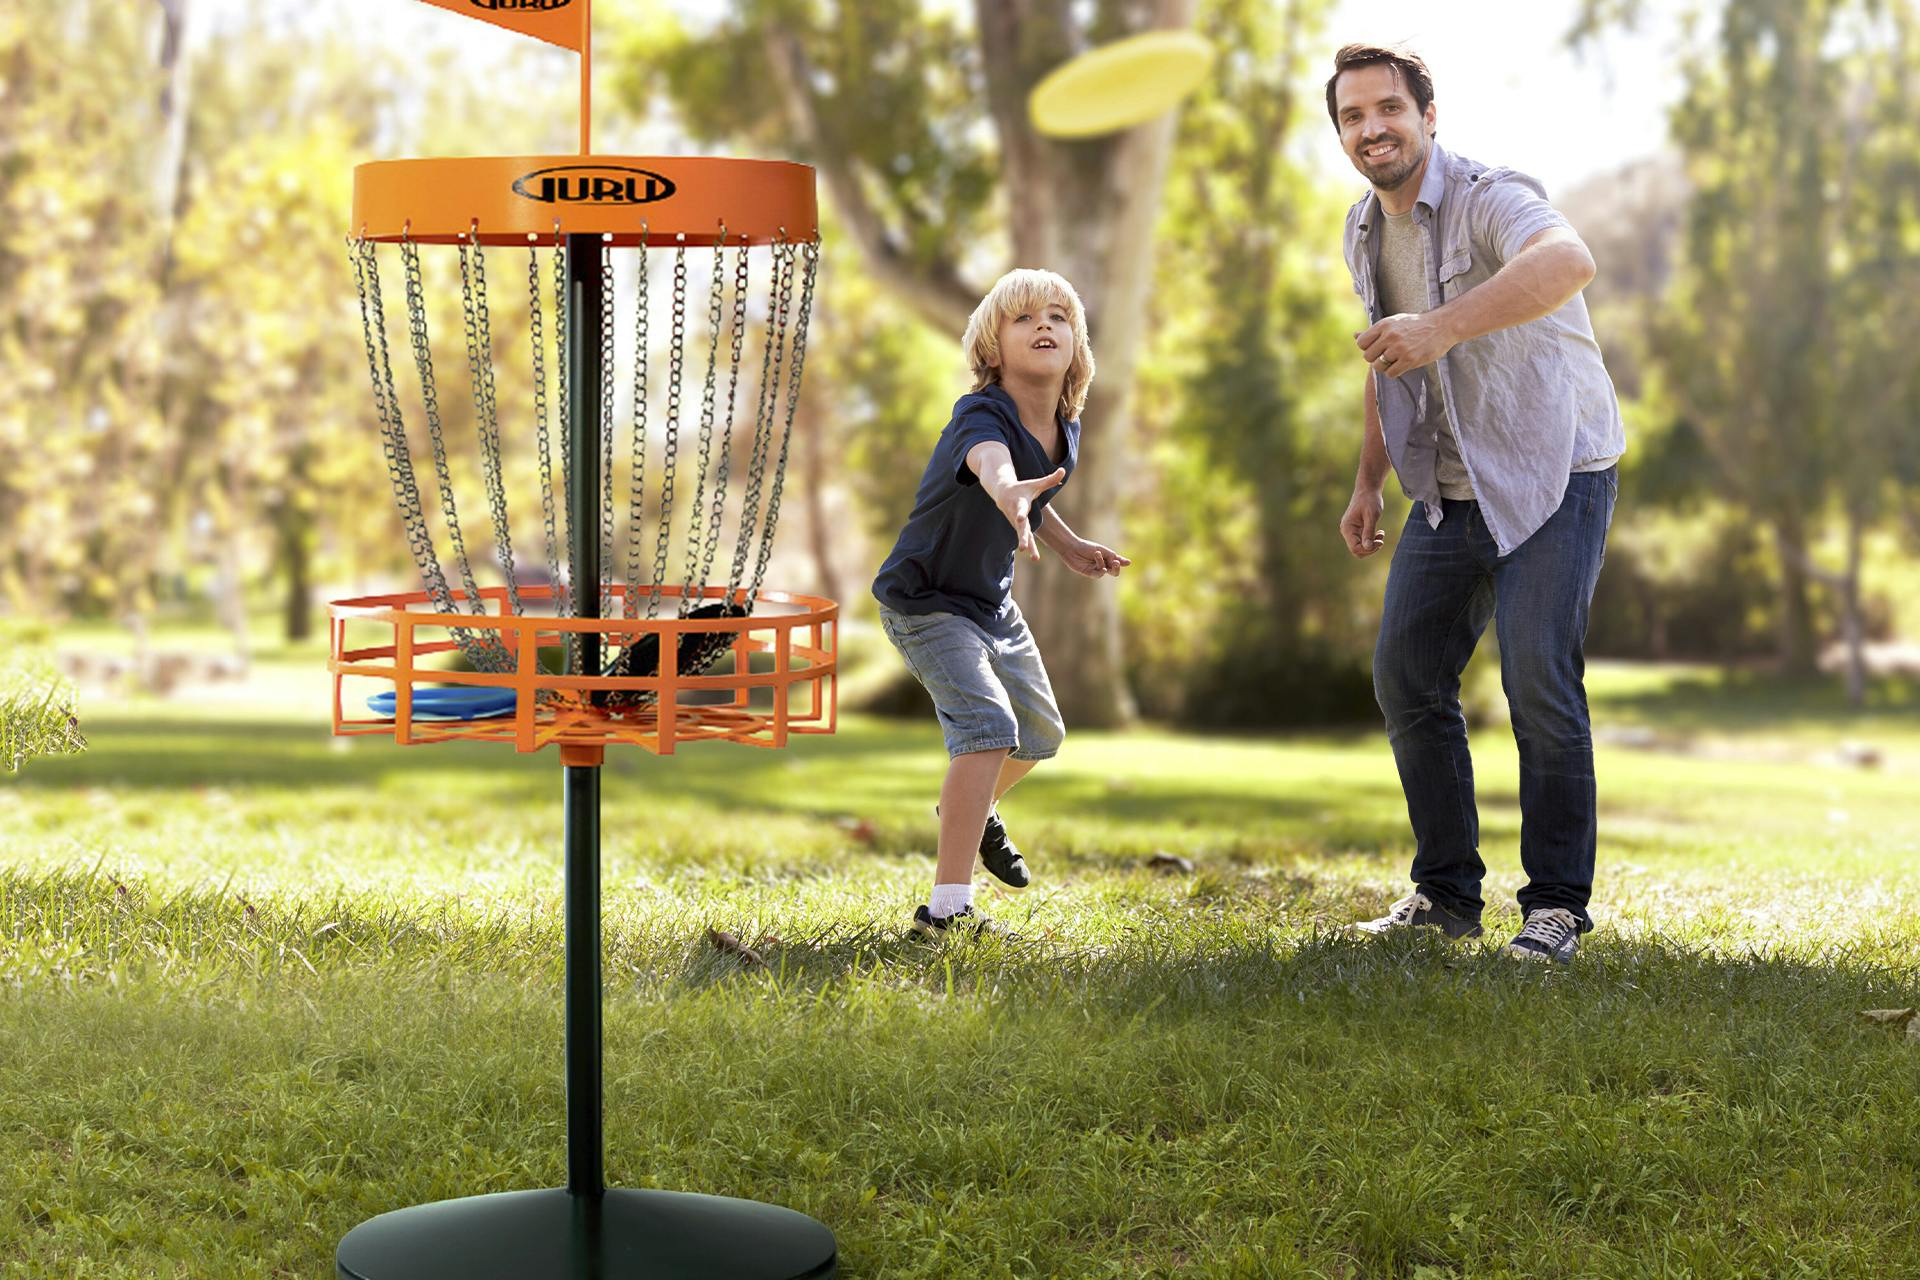 Mand og barn spiller frisbeegolf udendørs i naturen